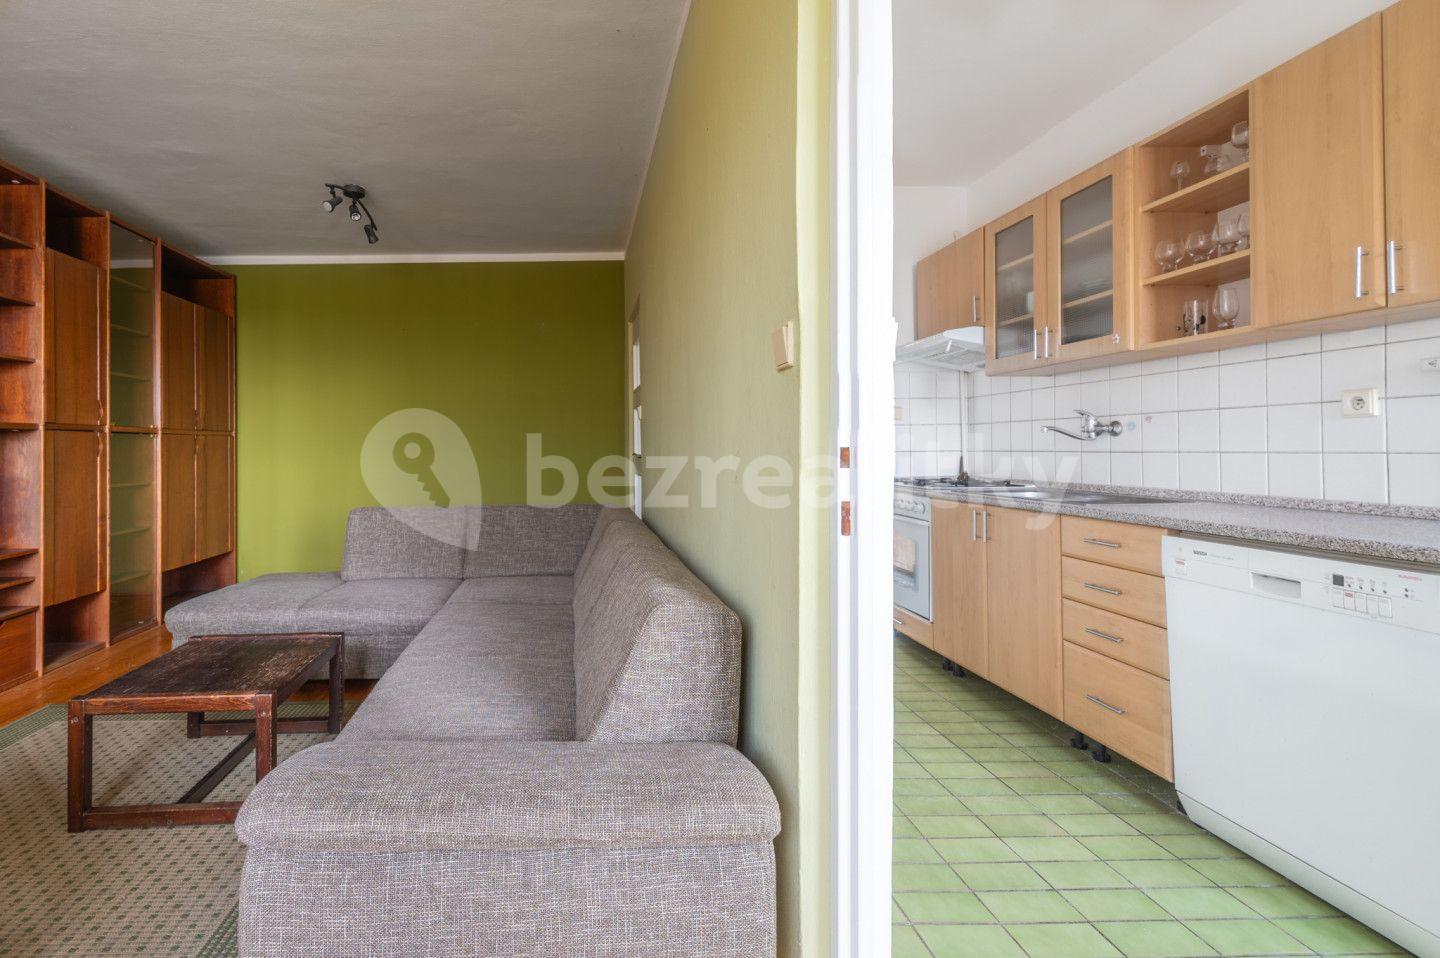 3 bedroom flat for sale, 74 m², Louky, Uherské Hradiště, Zlínský Region